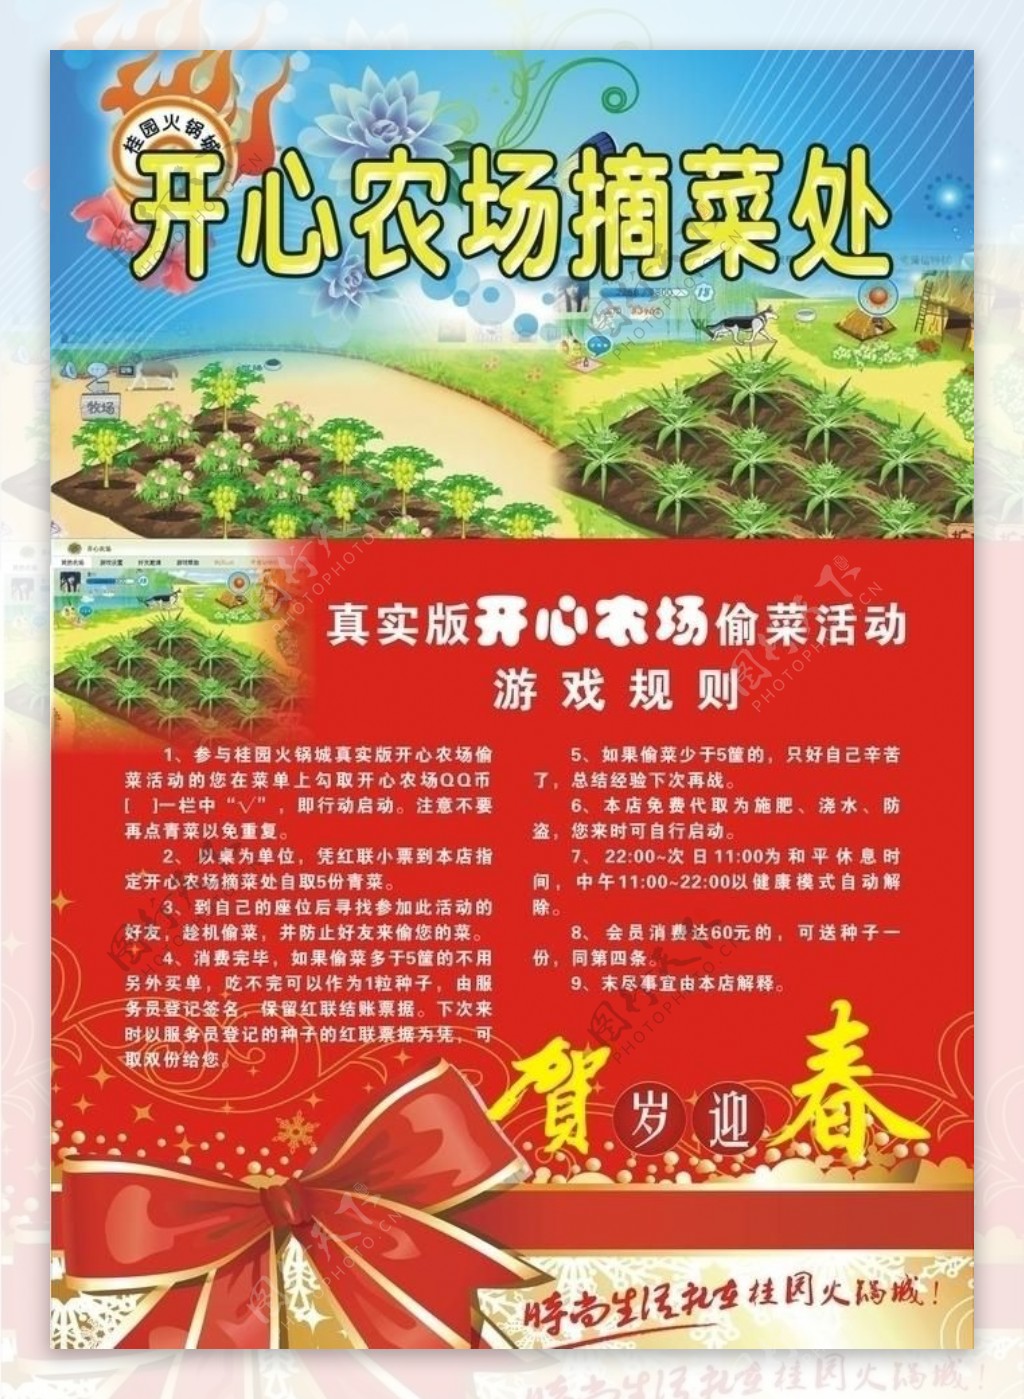 火锅农场宣传海报